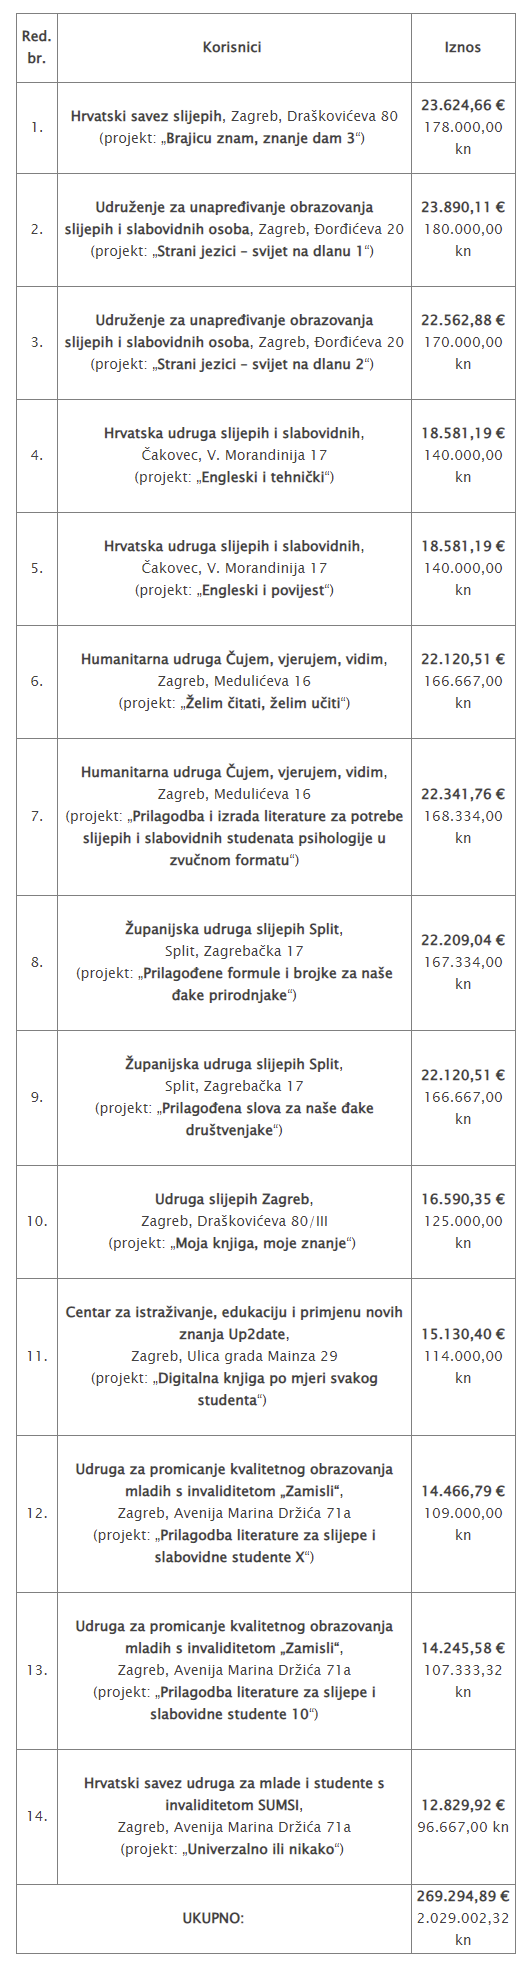 tablica s popisom udruga koje su dobile financiranje za prilagodbu sadržaja za slijepe i slabovidne učenike